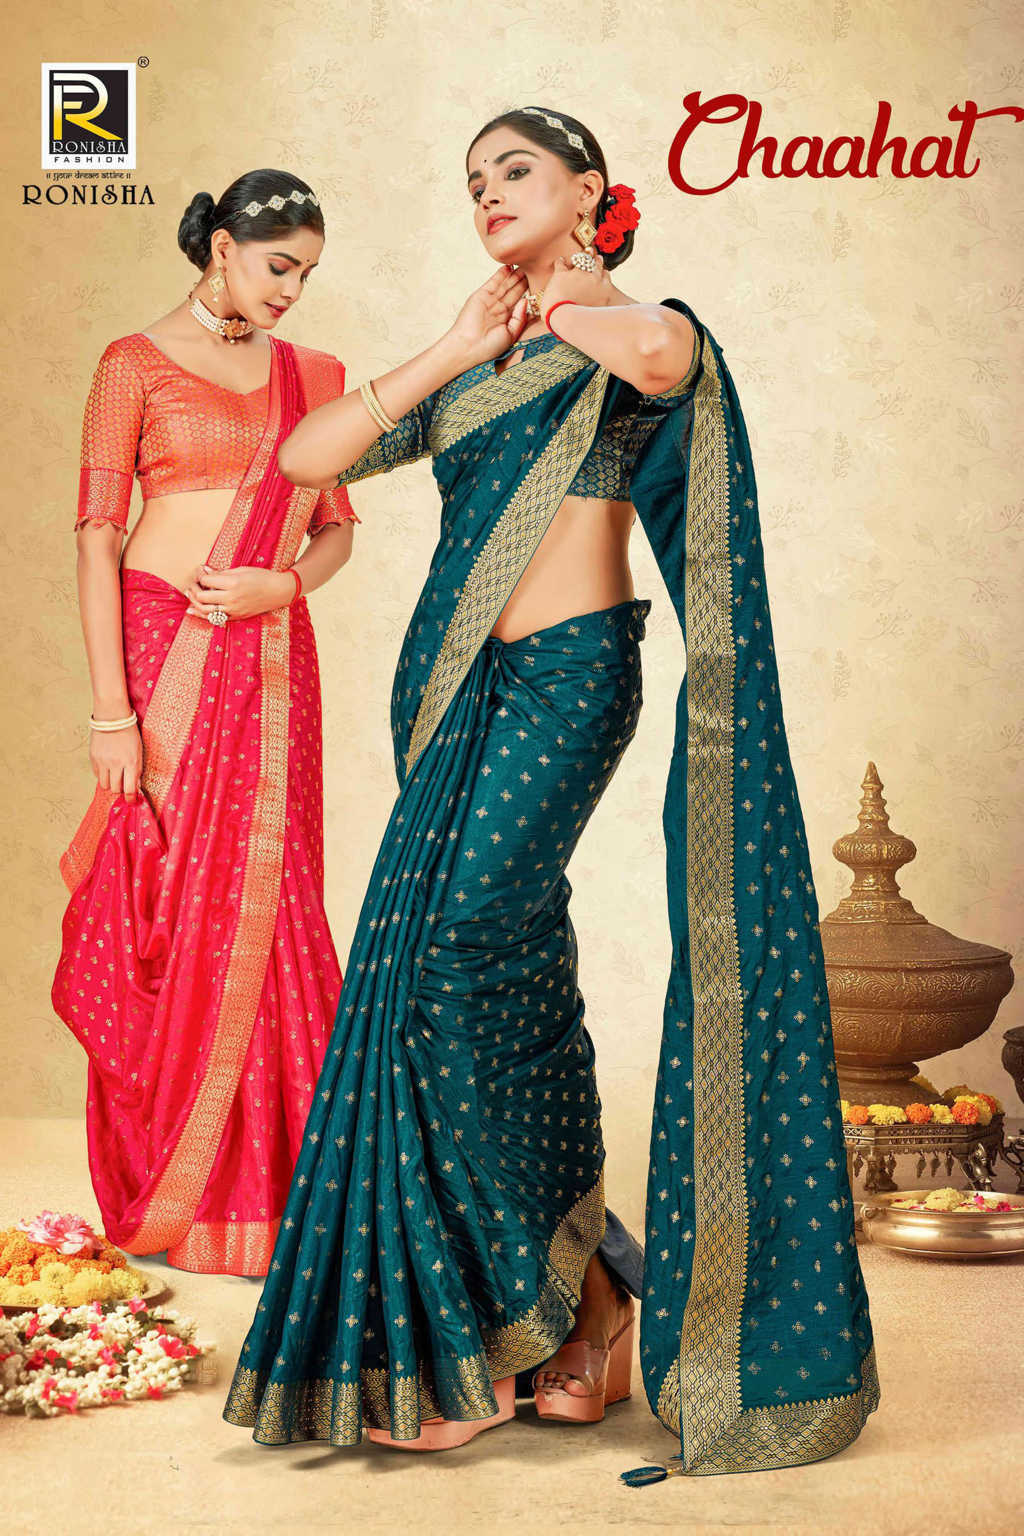 How to drape mermaid style saree | Best drape | Dolly Jain| - YouTube